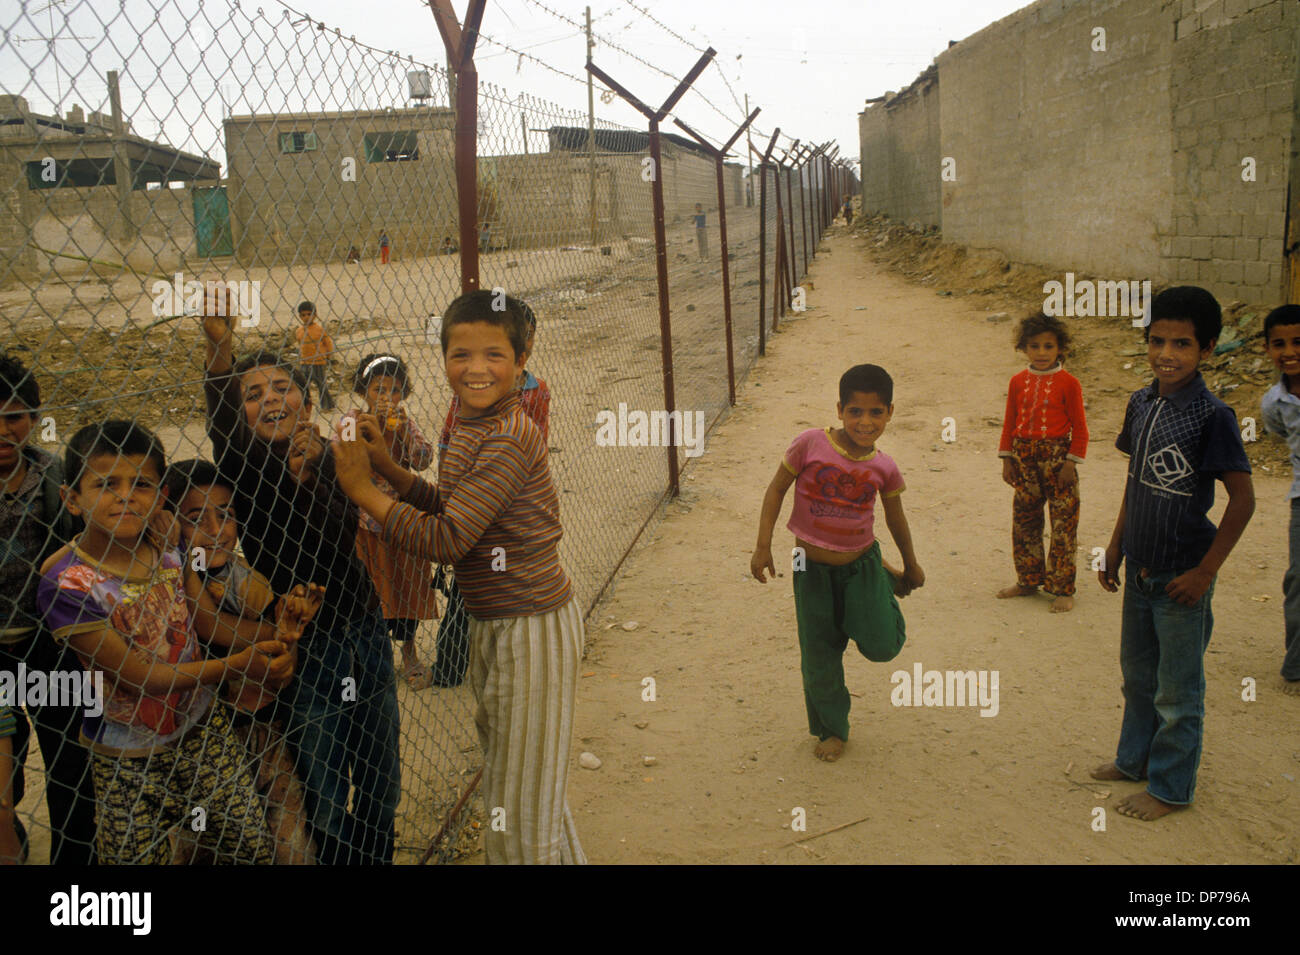 Rafah, palestinien, bande de Gaza avril 1982. Des enfants palestiniens jouent à travers la ville divisée. Quand Israël se retire du Sinaï en 1982, dans le cadre du traité de paix Égypte-Israël de 1979. Rafah a été divisé en une partie gazaouie et une partie égyptienne, divisant les familles, séparées par des barrières barbelées. HOMER SYKES des années 1980 Banque D'Images